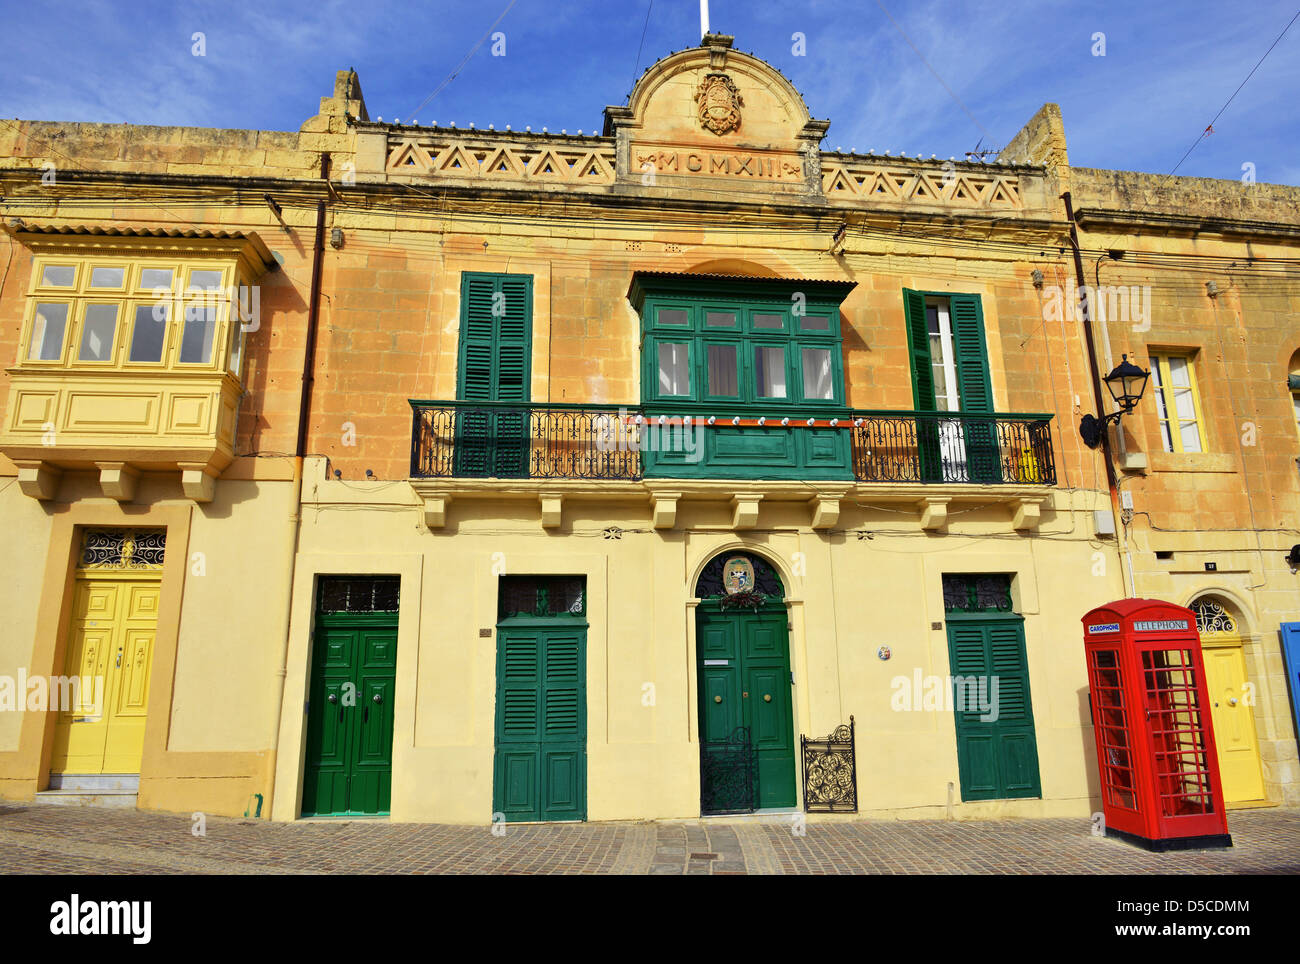 Style ancien téléphone britannique fort à Marsaxlokk, Malte Banque D'Images